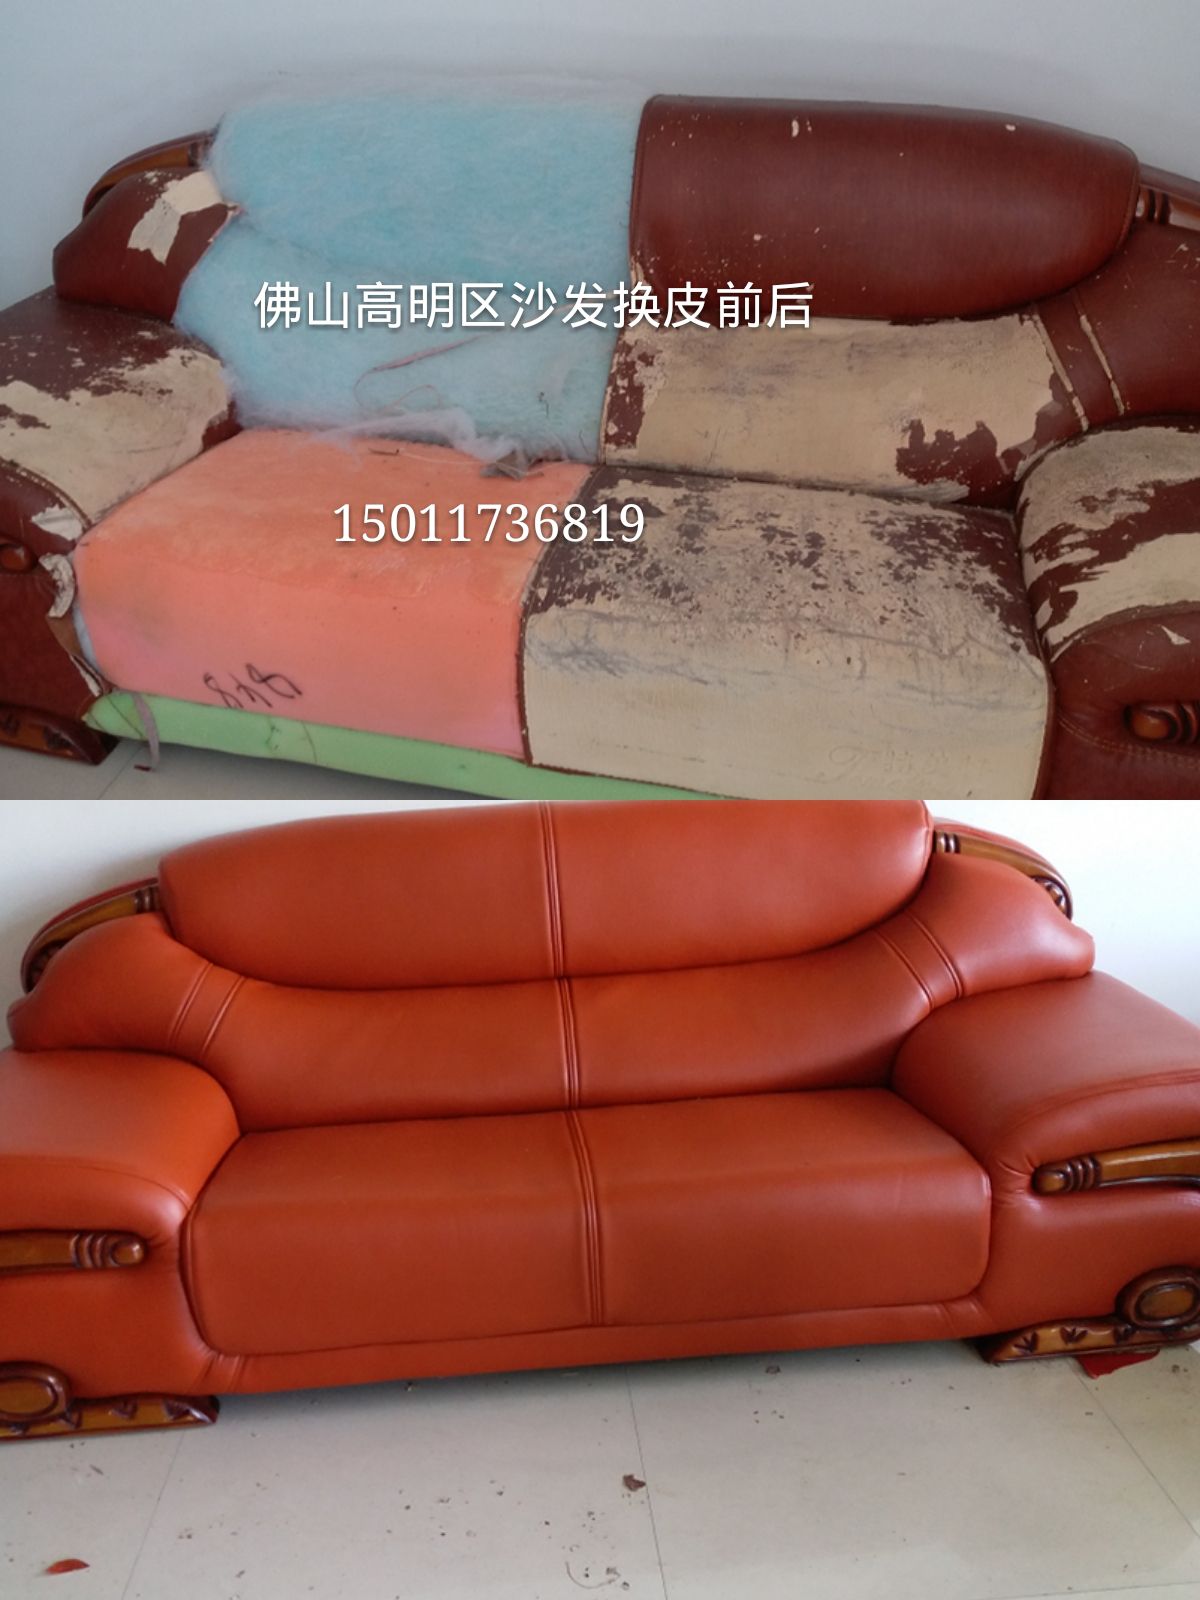 广州沙发加工换皮翻新修复  沙发加工修复